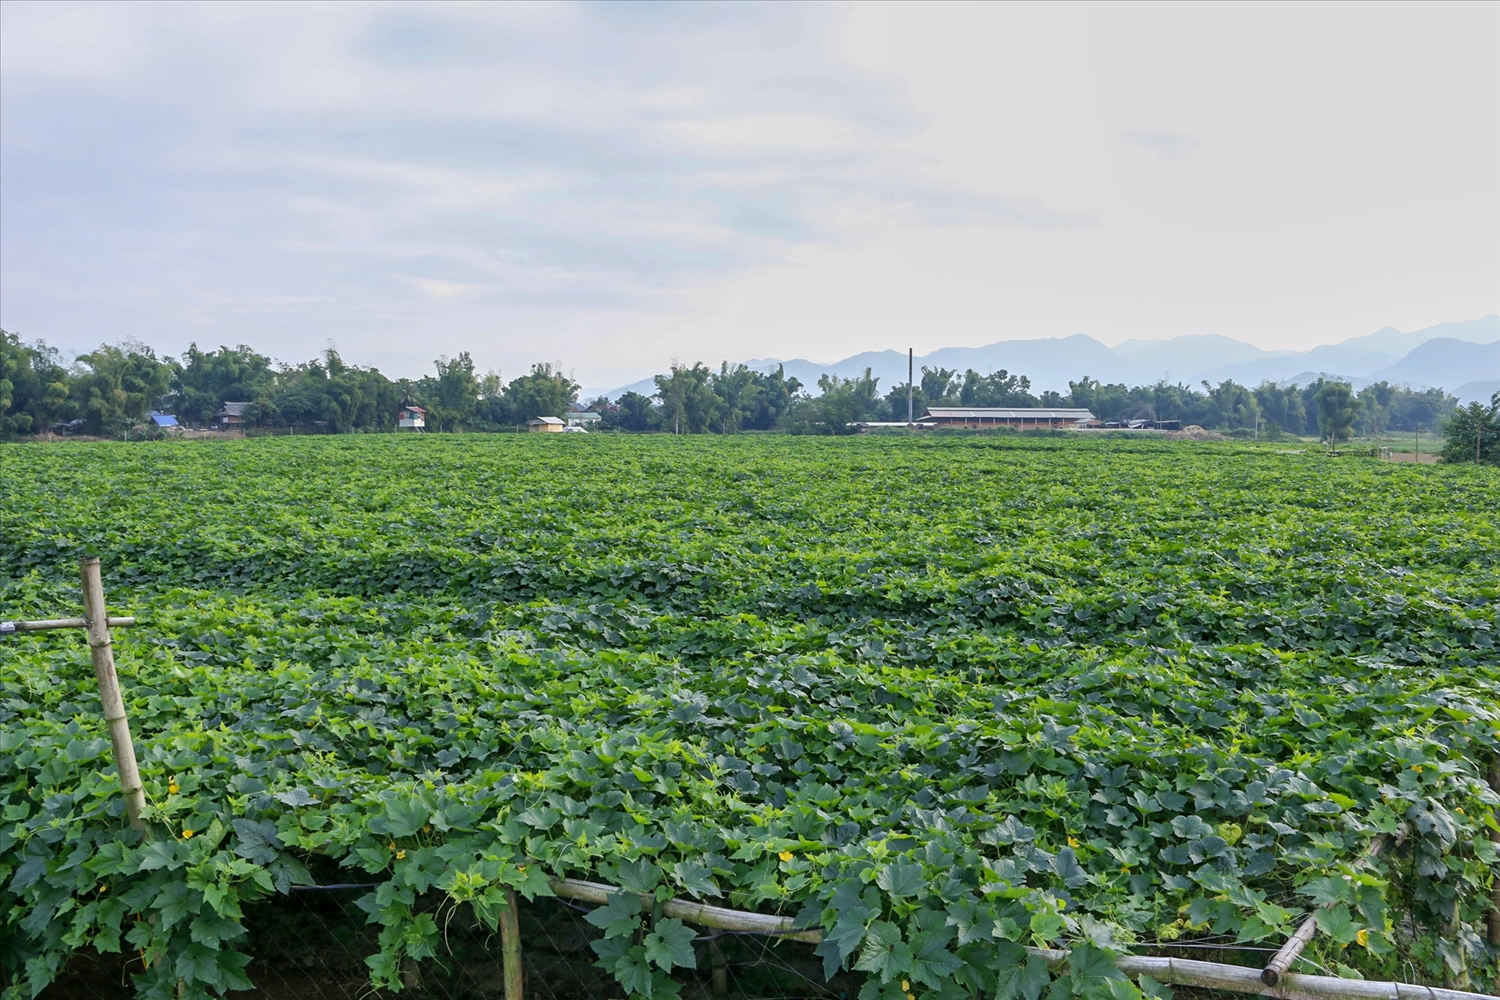 Trang trại trồng bí xanh của HTX Nông nghiệp công nghệ cao Phú Mỹ Xanh (xã Thanh Yên, huyện Điện Biên)